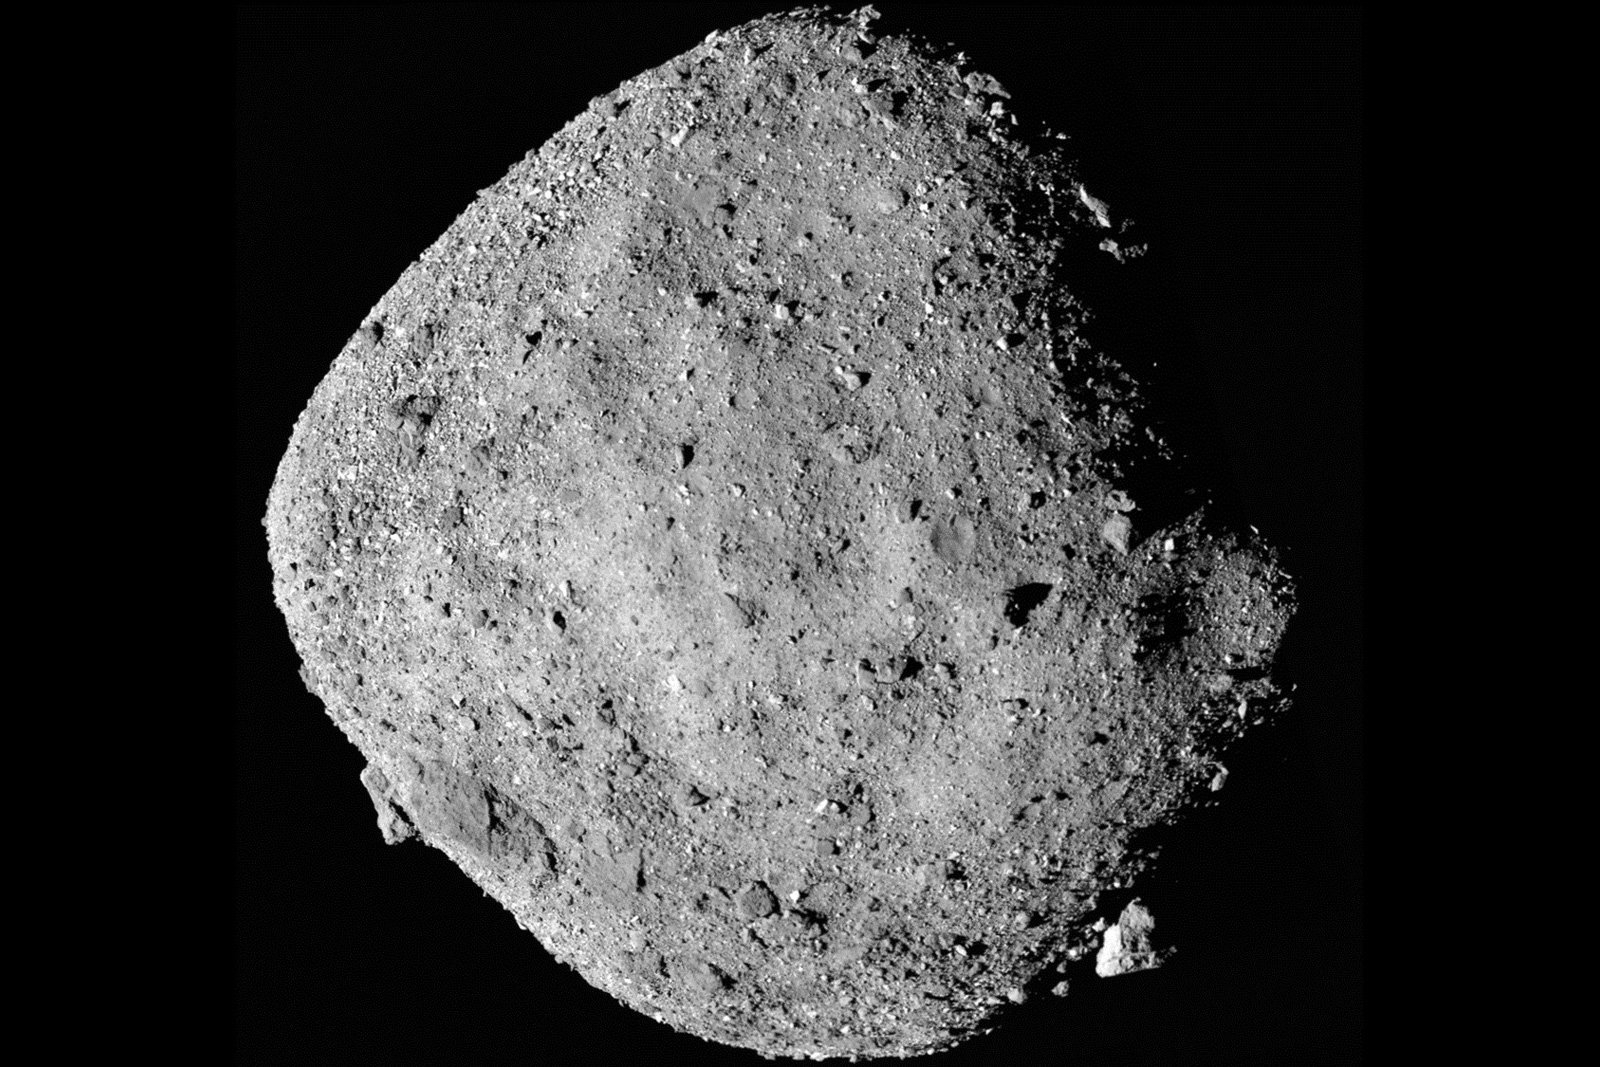 Автоматическая станция OSIRIS-REx обнаружила следы воды на астероиде Бенну